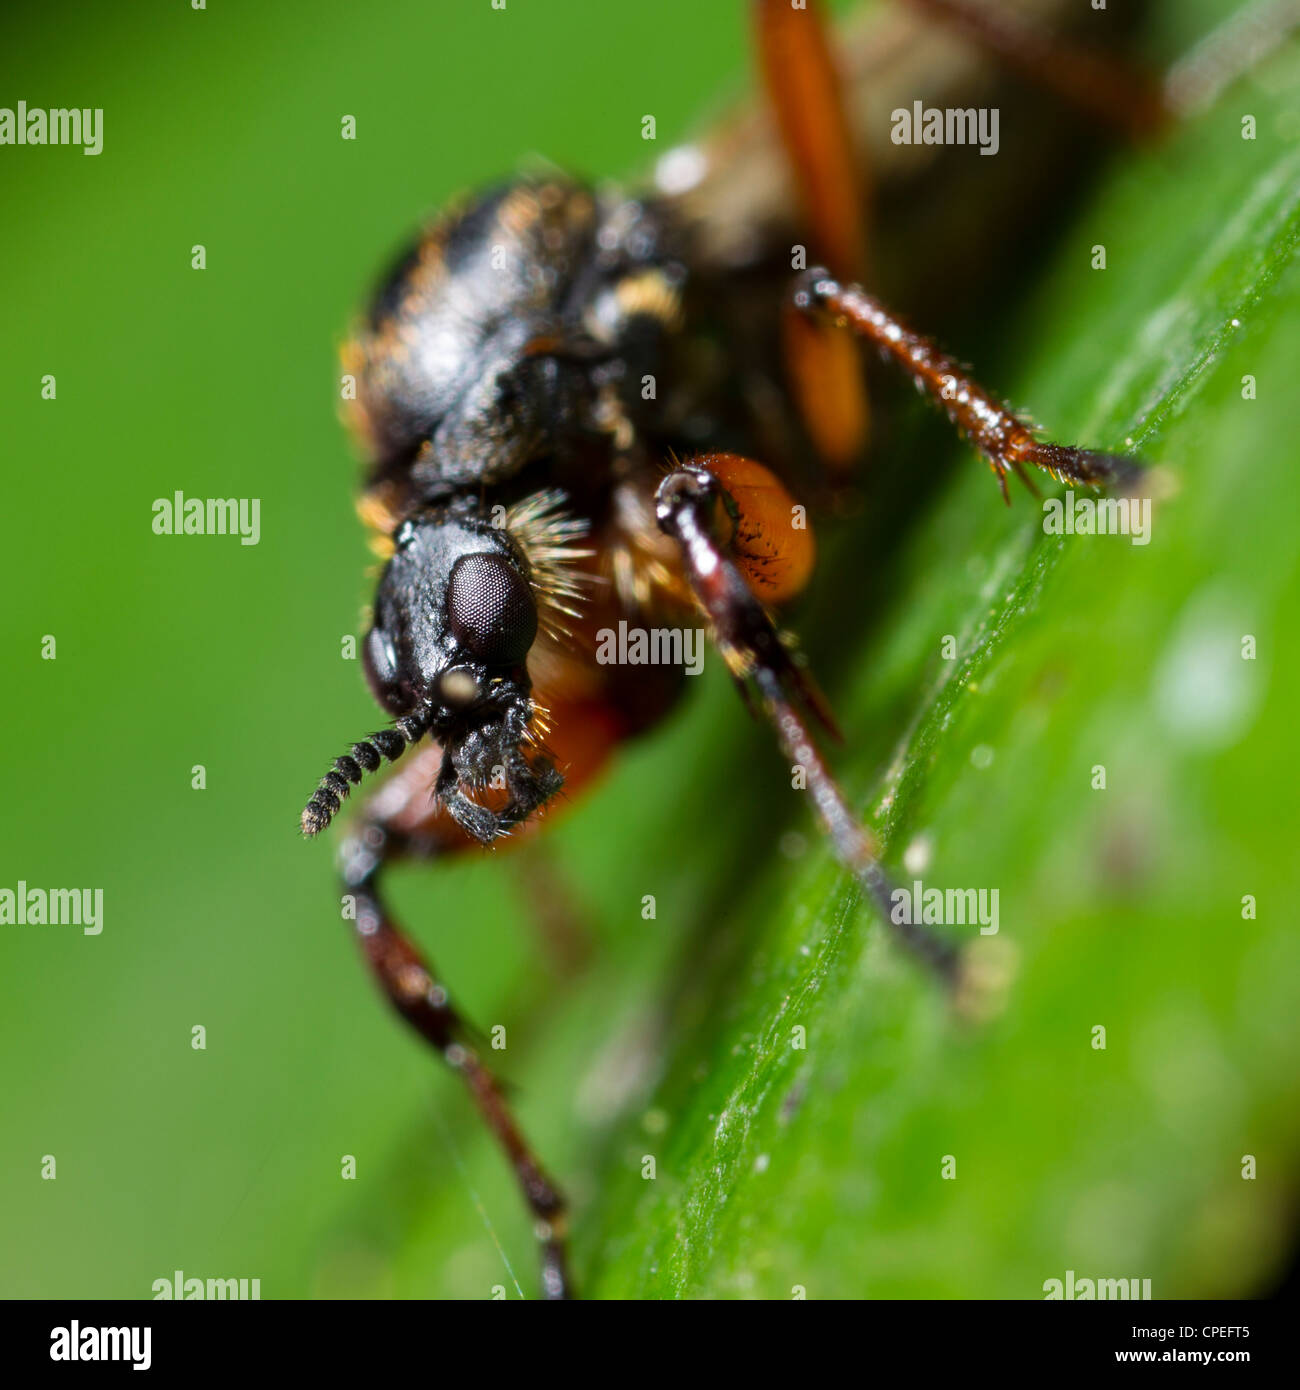 Bibio Johannis oder schwarze Mücke, eine Art von März fliegen.  Dieses ist ein Weibchen. Stockfoto